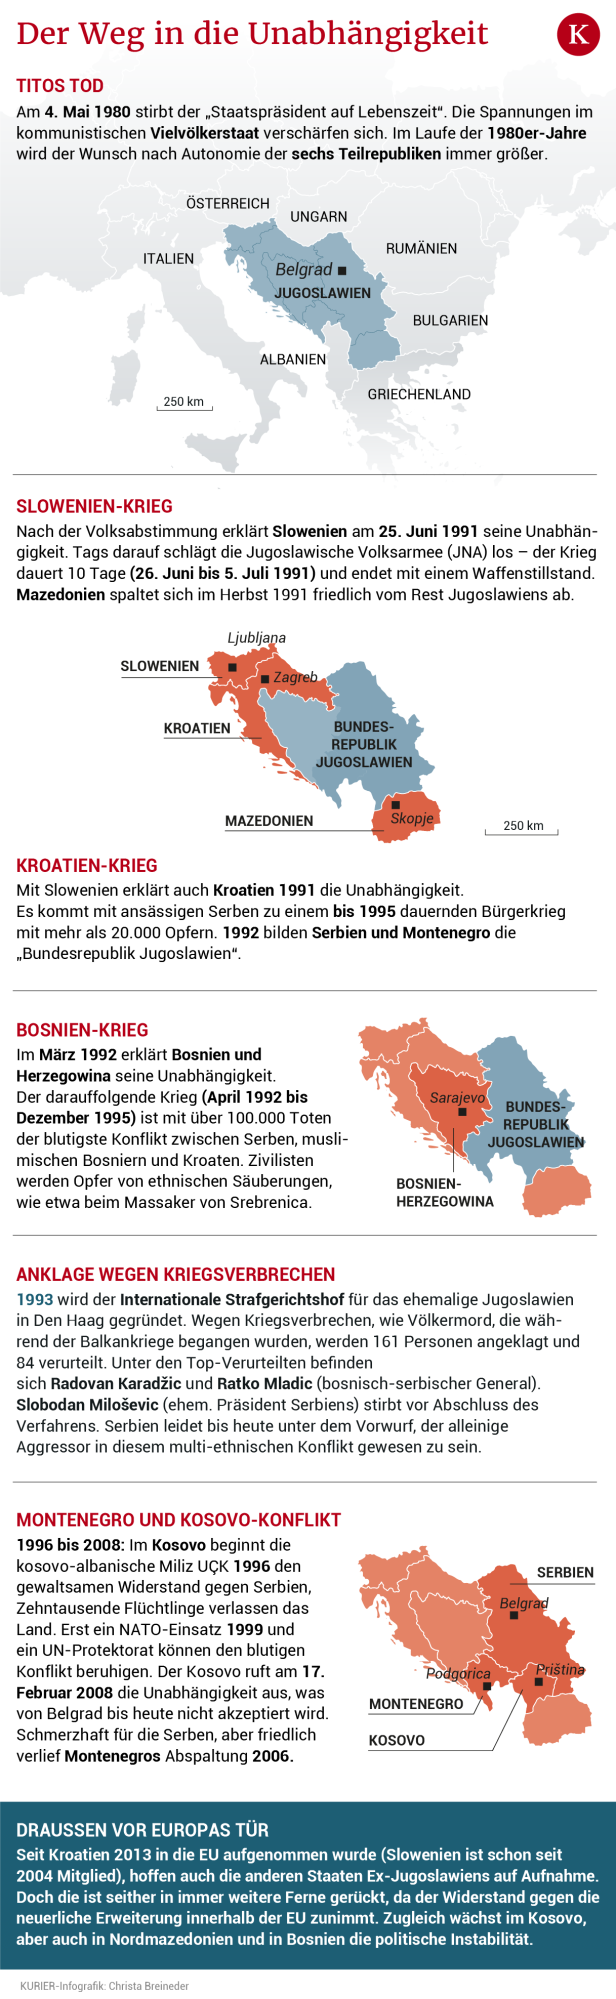 Westbalkan bleibt "Region der ungelösten Konflikte"